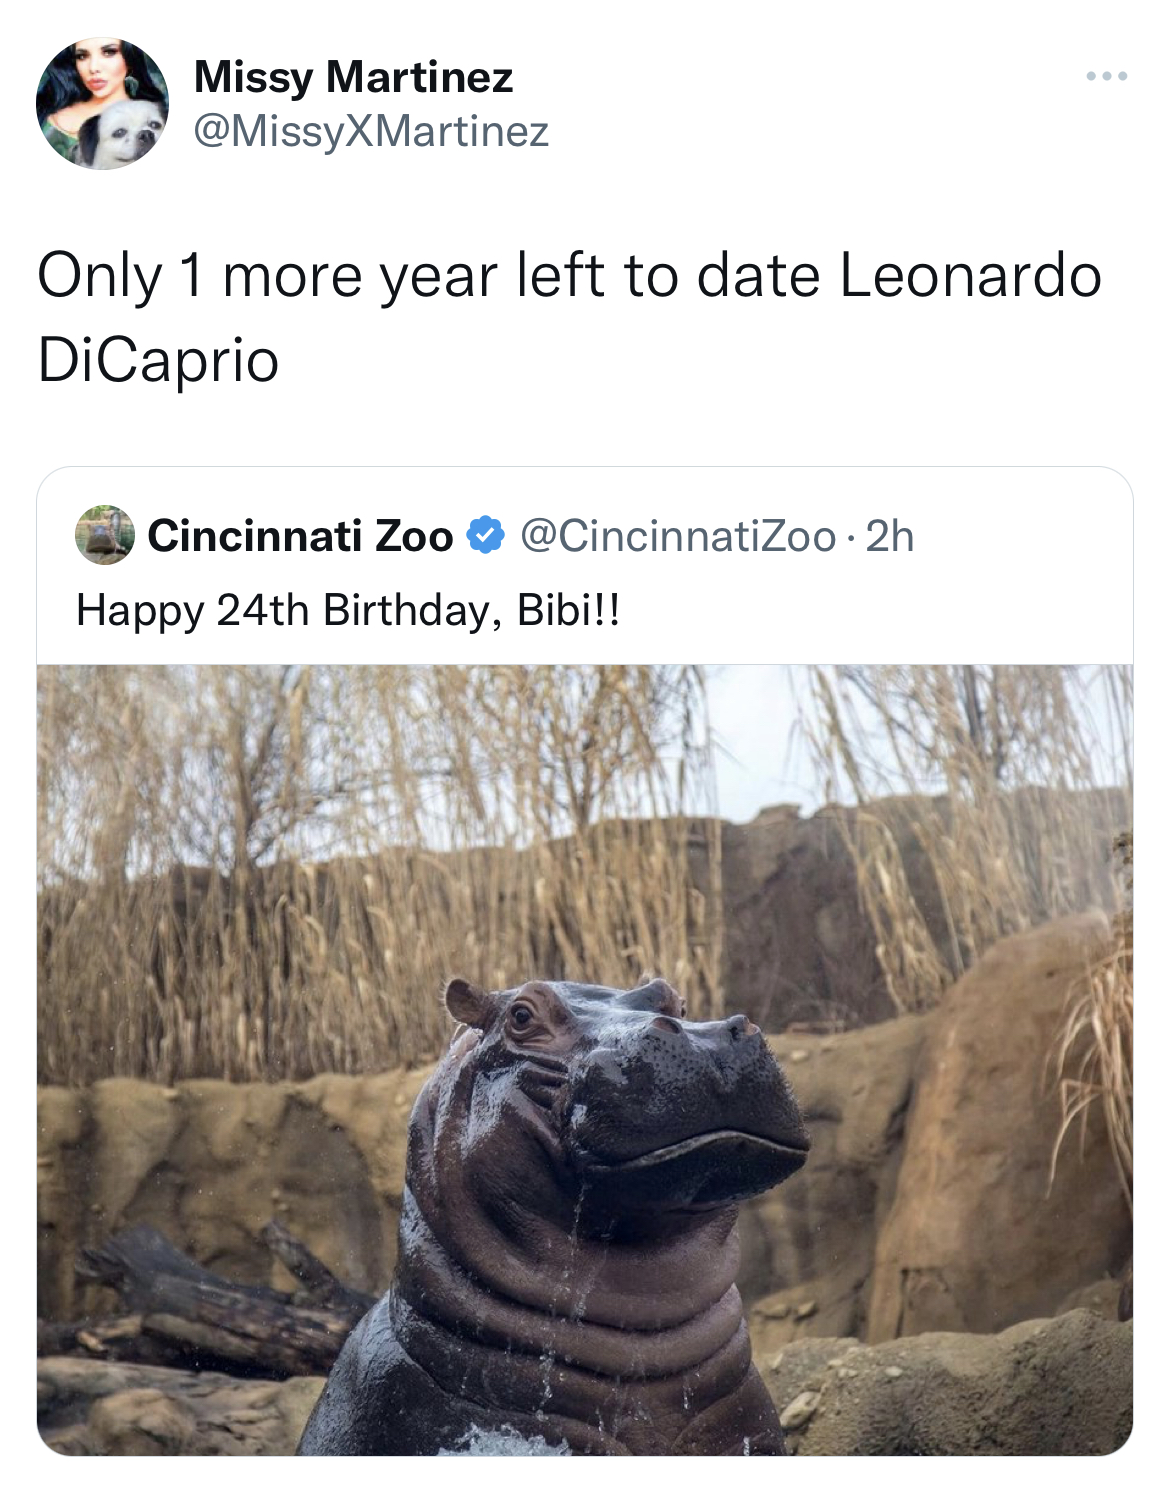 leonardo dicaprio dating a teenager meme - bibi hippo